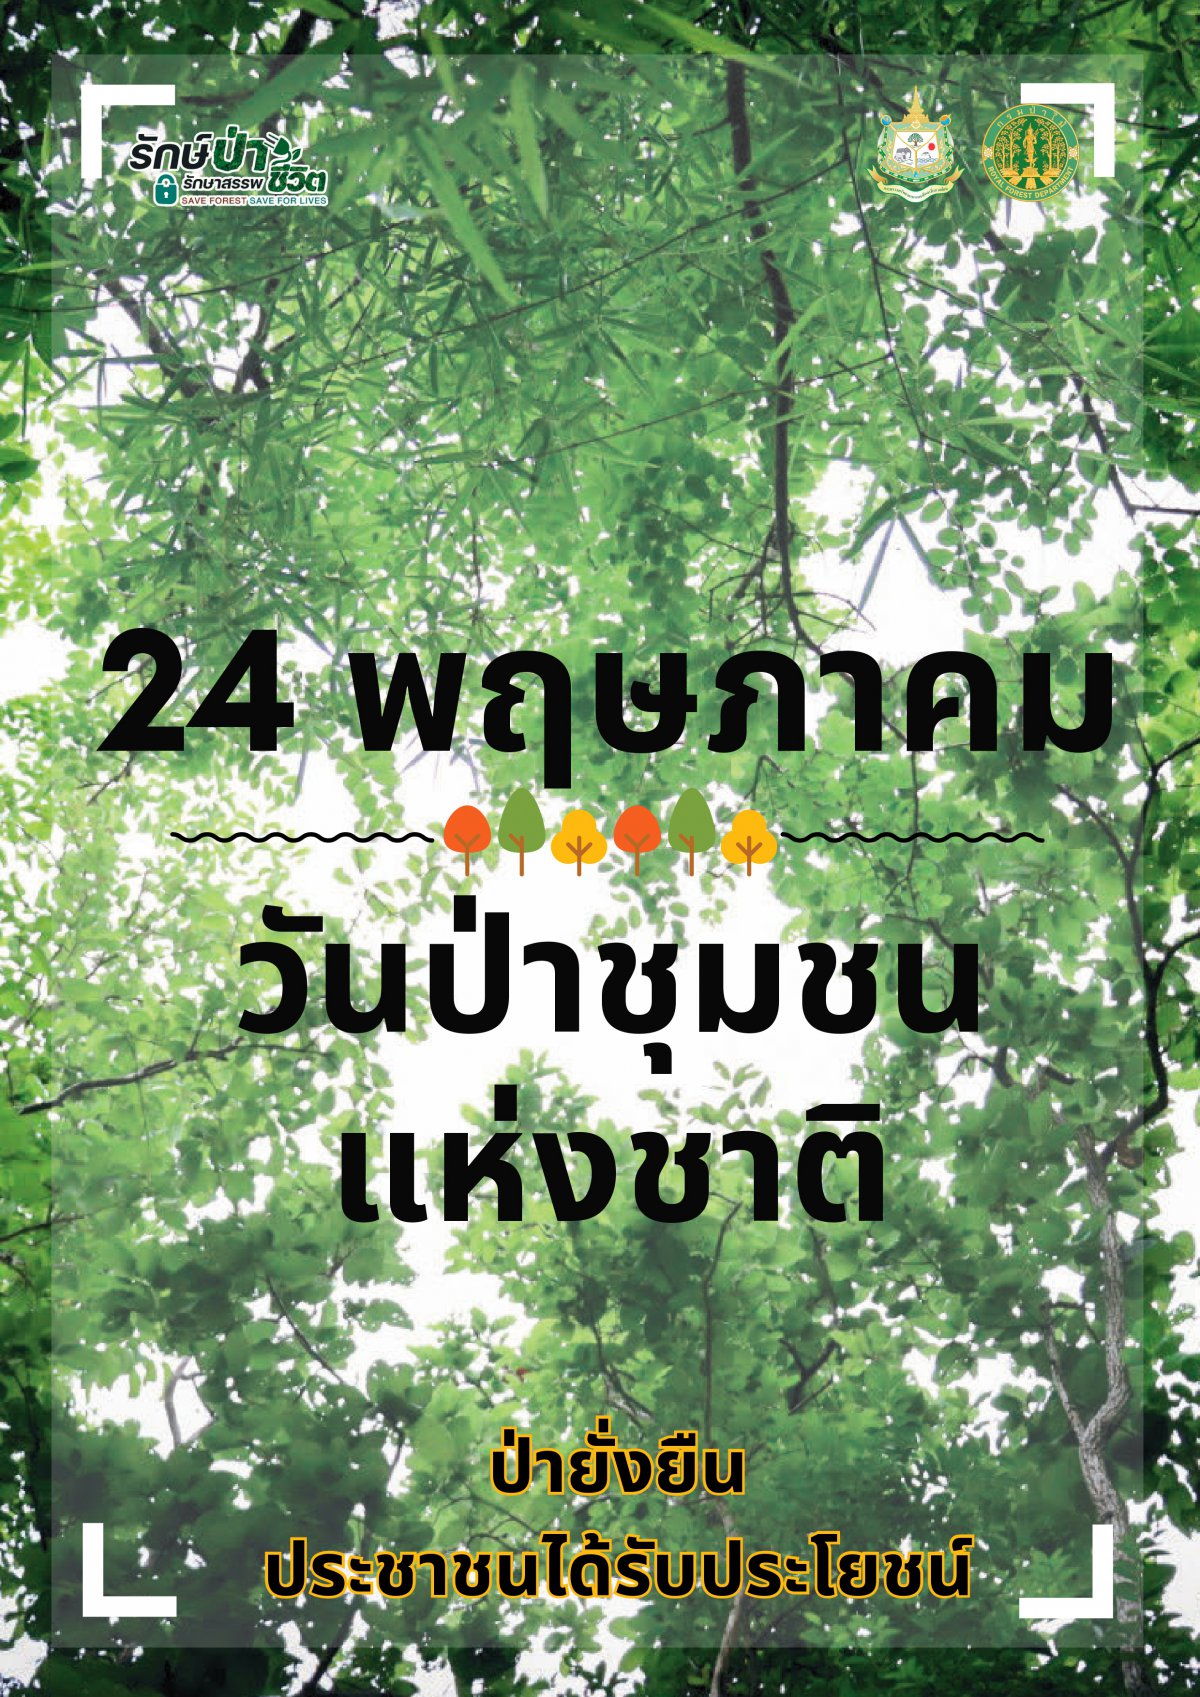 ด้วยกระทรวงมหาดไทยได้รับแจ้งจากกรมป่าไม้ว่า คณะรัฐมนตรีมีมติเมื่อวันที่ 11 มกราคม 2565 เห็นชอบให้วันที่ 24 พฤษภาคม ของทุกปี เป็นวันป่าชุมชนแห่งชาติ ซึ่งเป็นการกำหนดวันในเชิงสัญลักษณ์ ที่สืบเนื่องจากเป็นวันที่พระบาทสมเด็จพระปรเมนทรรามาธิบดีศ